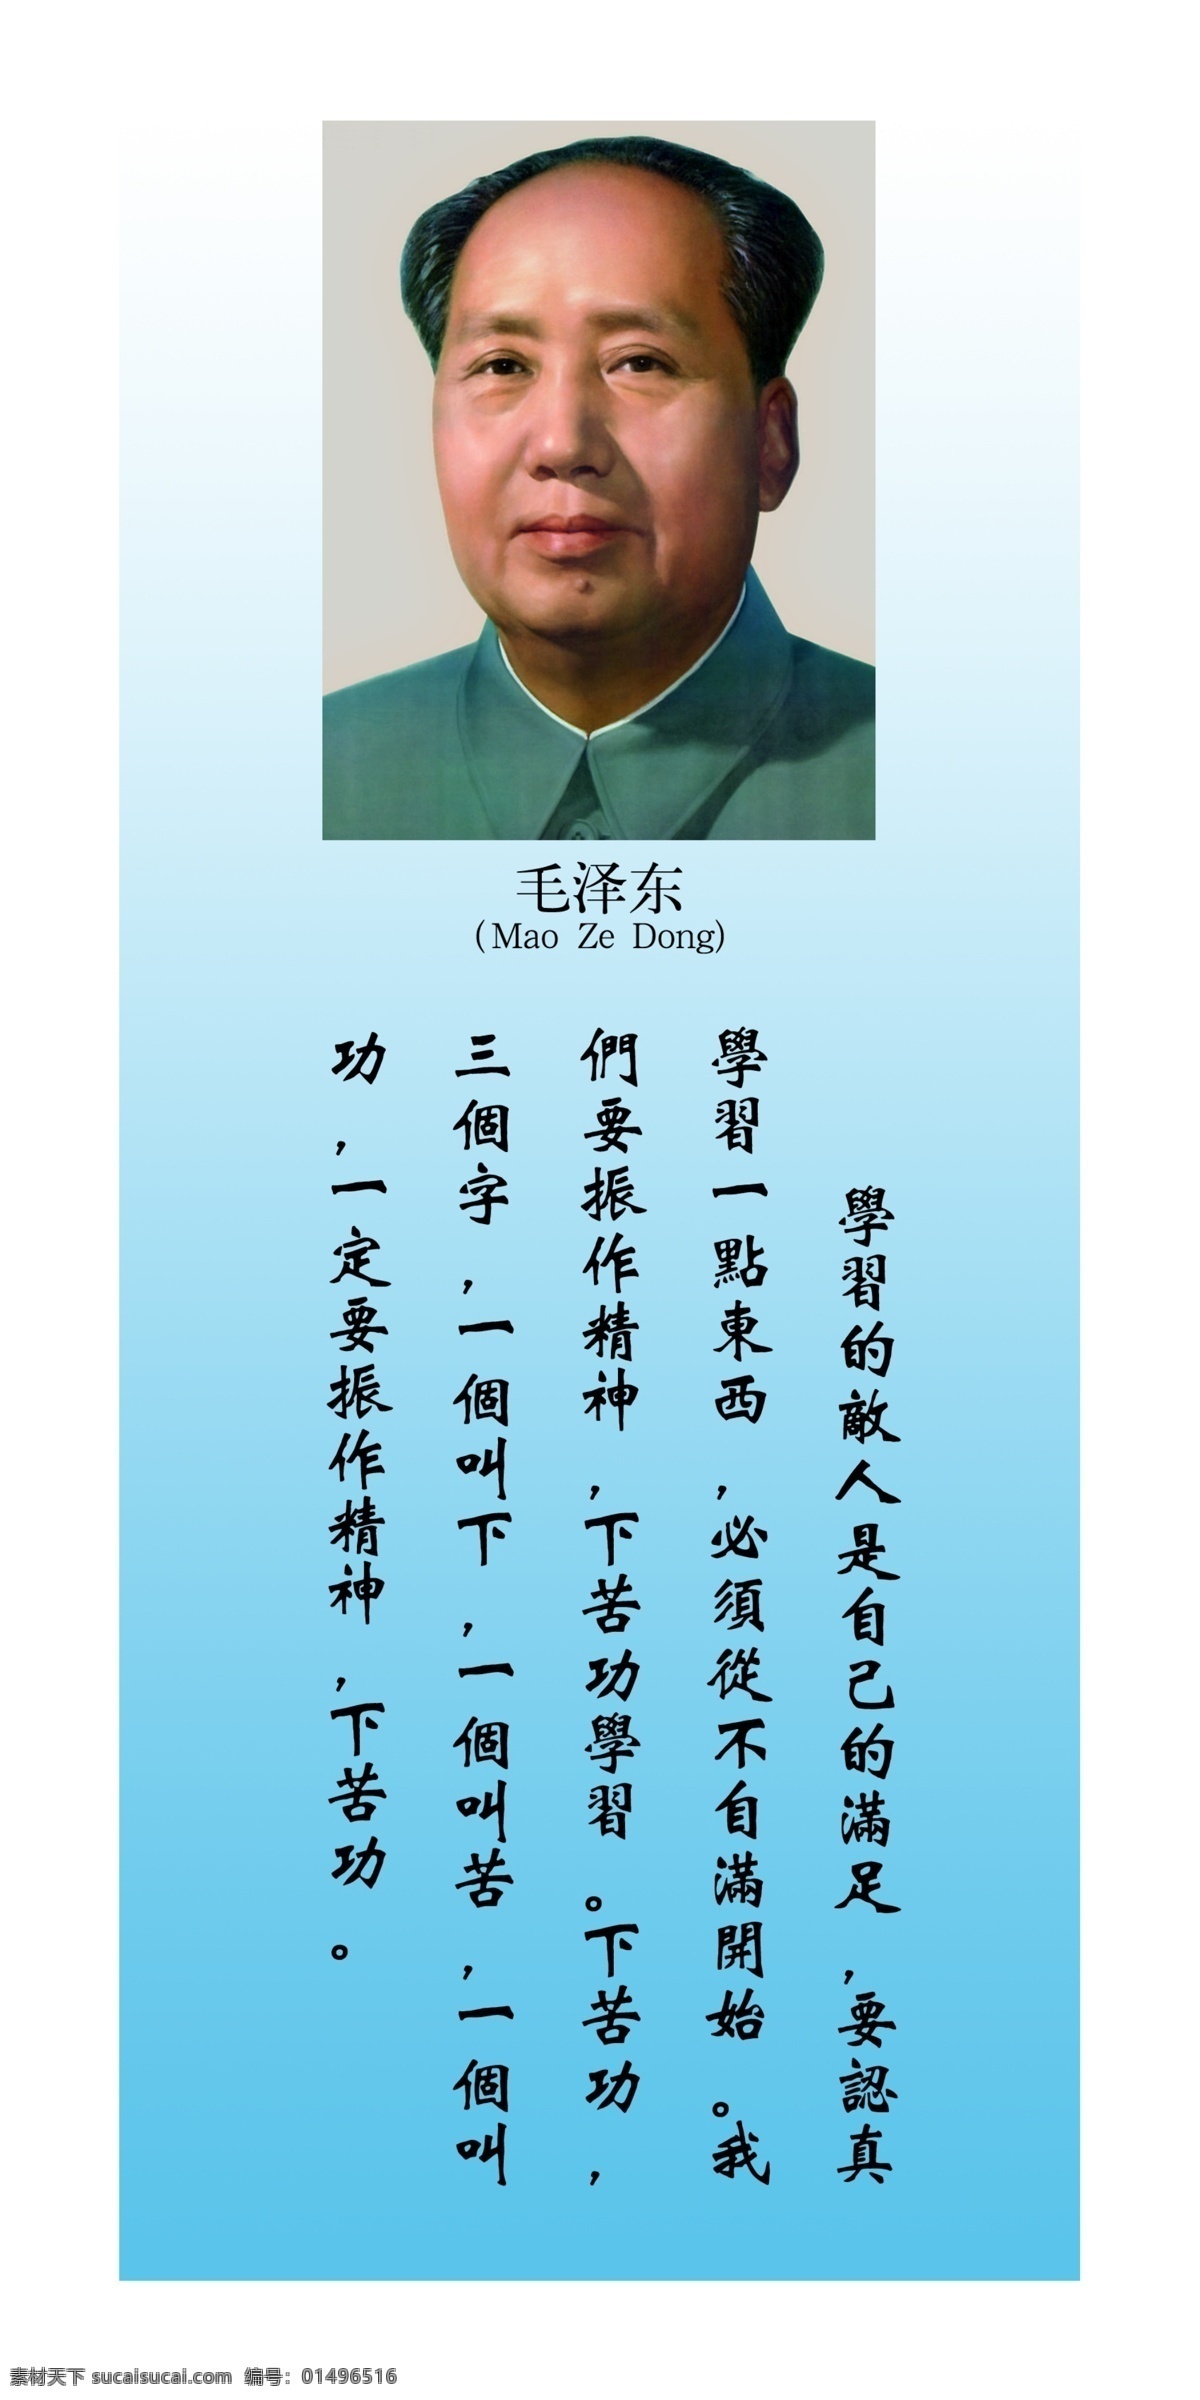 伟人名言 伟人 名言 国家领导人 毛泽东 党建 展板模板 广告设计模板 源文件